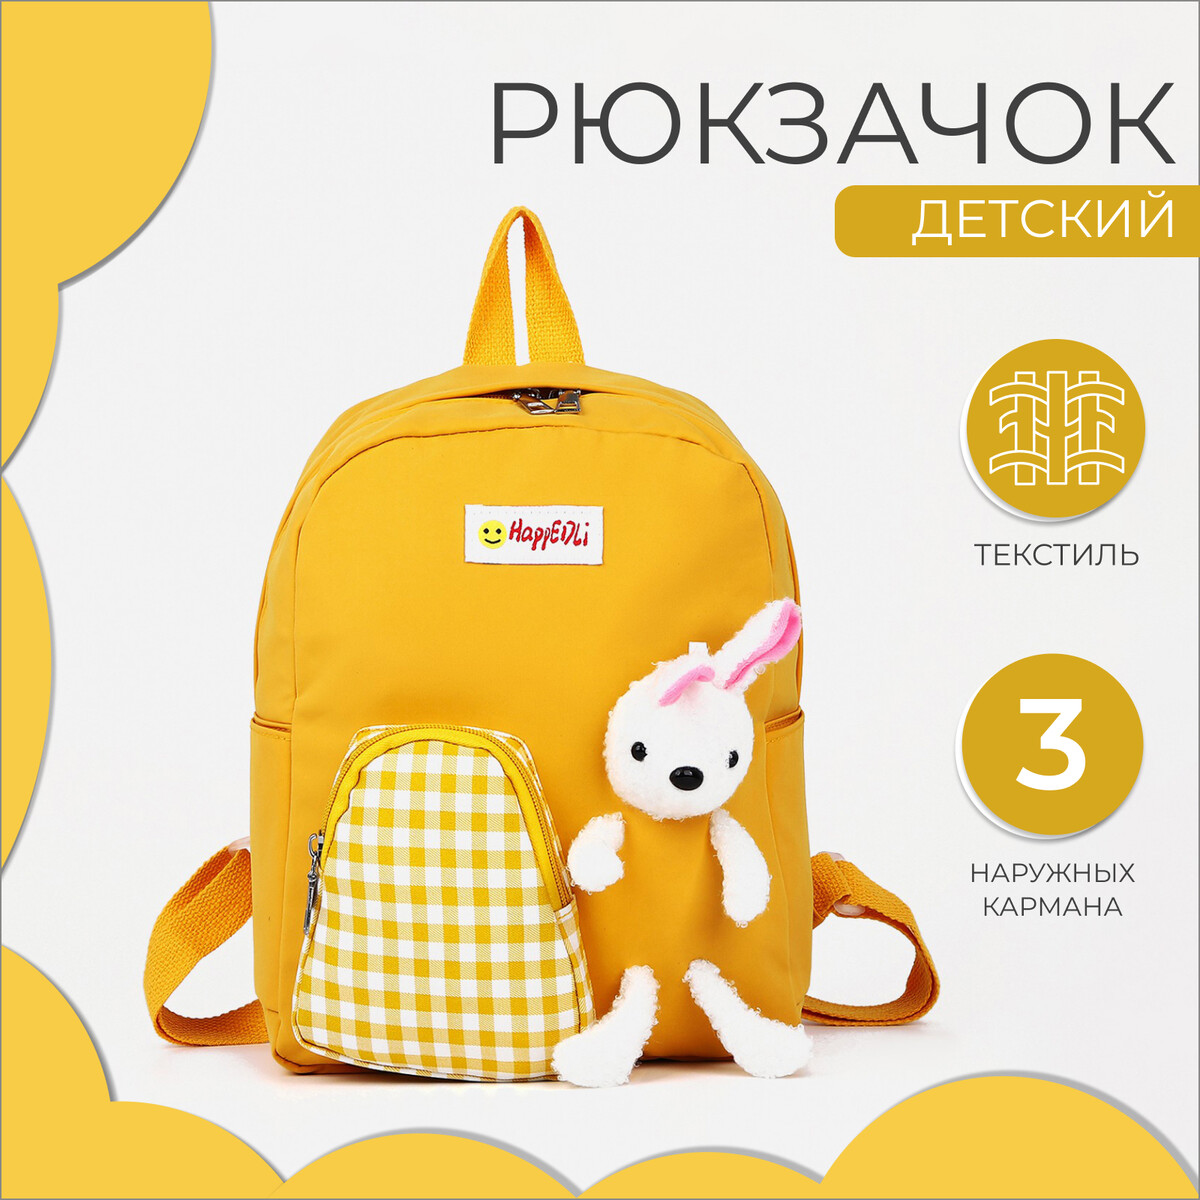 Рюкзак детский на молнии, 3 наружных кармана, цвет желтый рюкзак детский на молнии 3 наружных кармана зеленый